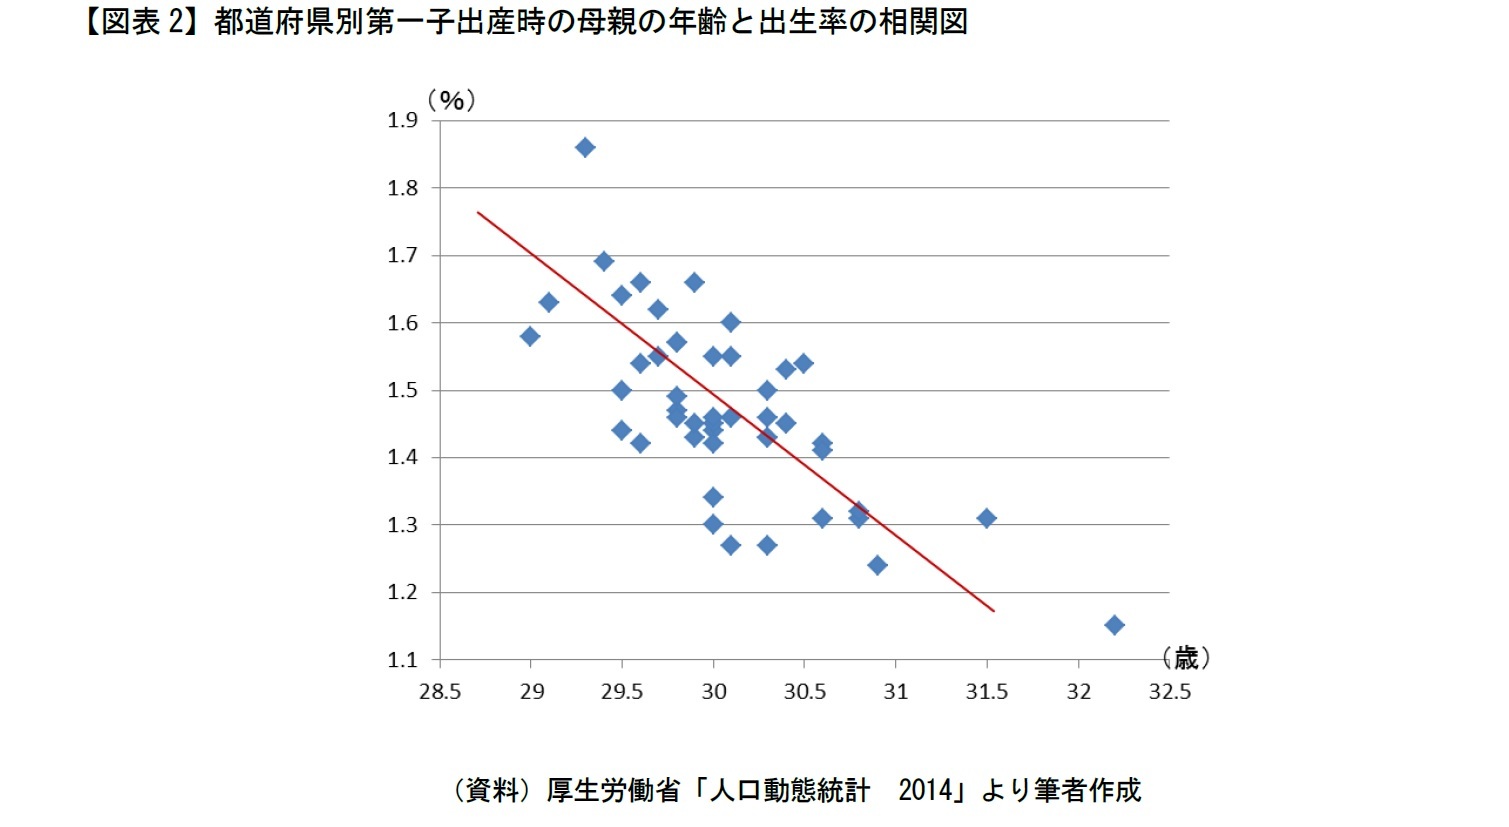 【図表2】都道府県別第一子出産時の母親の年齢と出生率の相関図